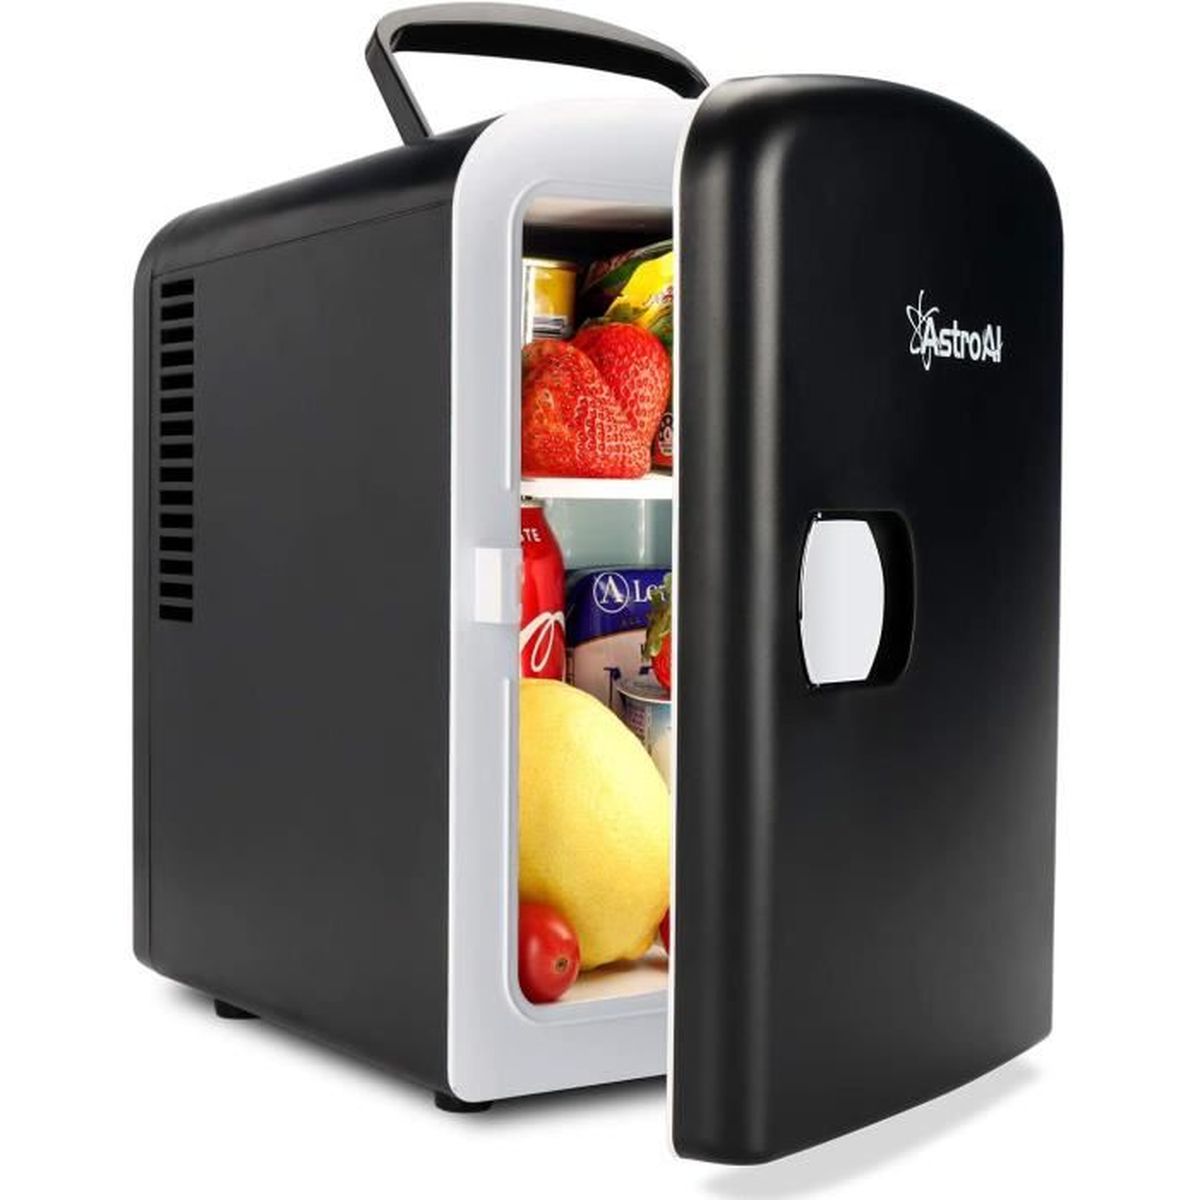 10 L Portable Intelligent Affichage Numérique Mini Réfrigérateur pour maison bureau voiture.